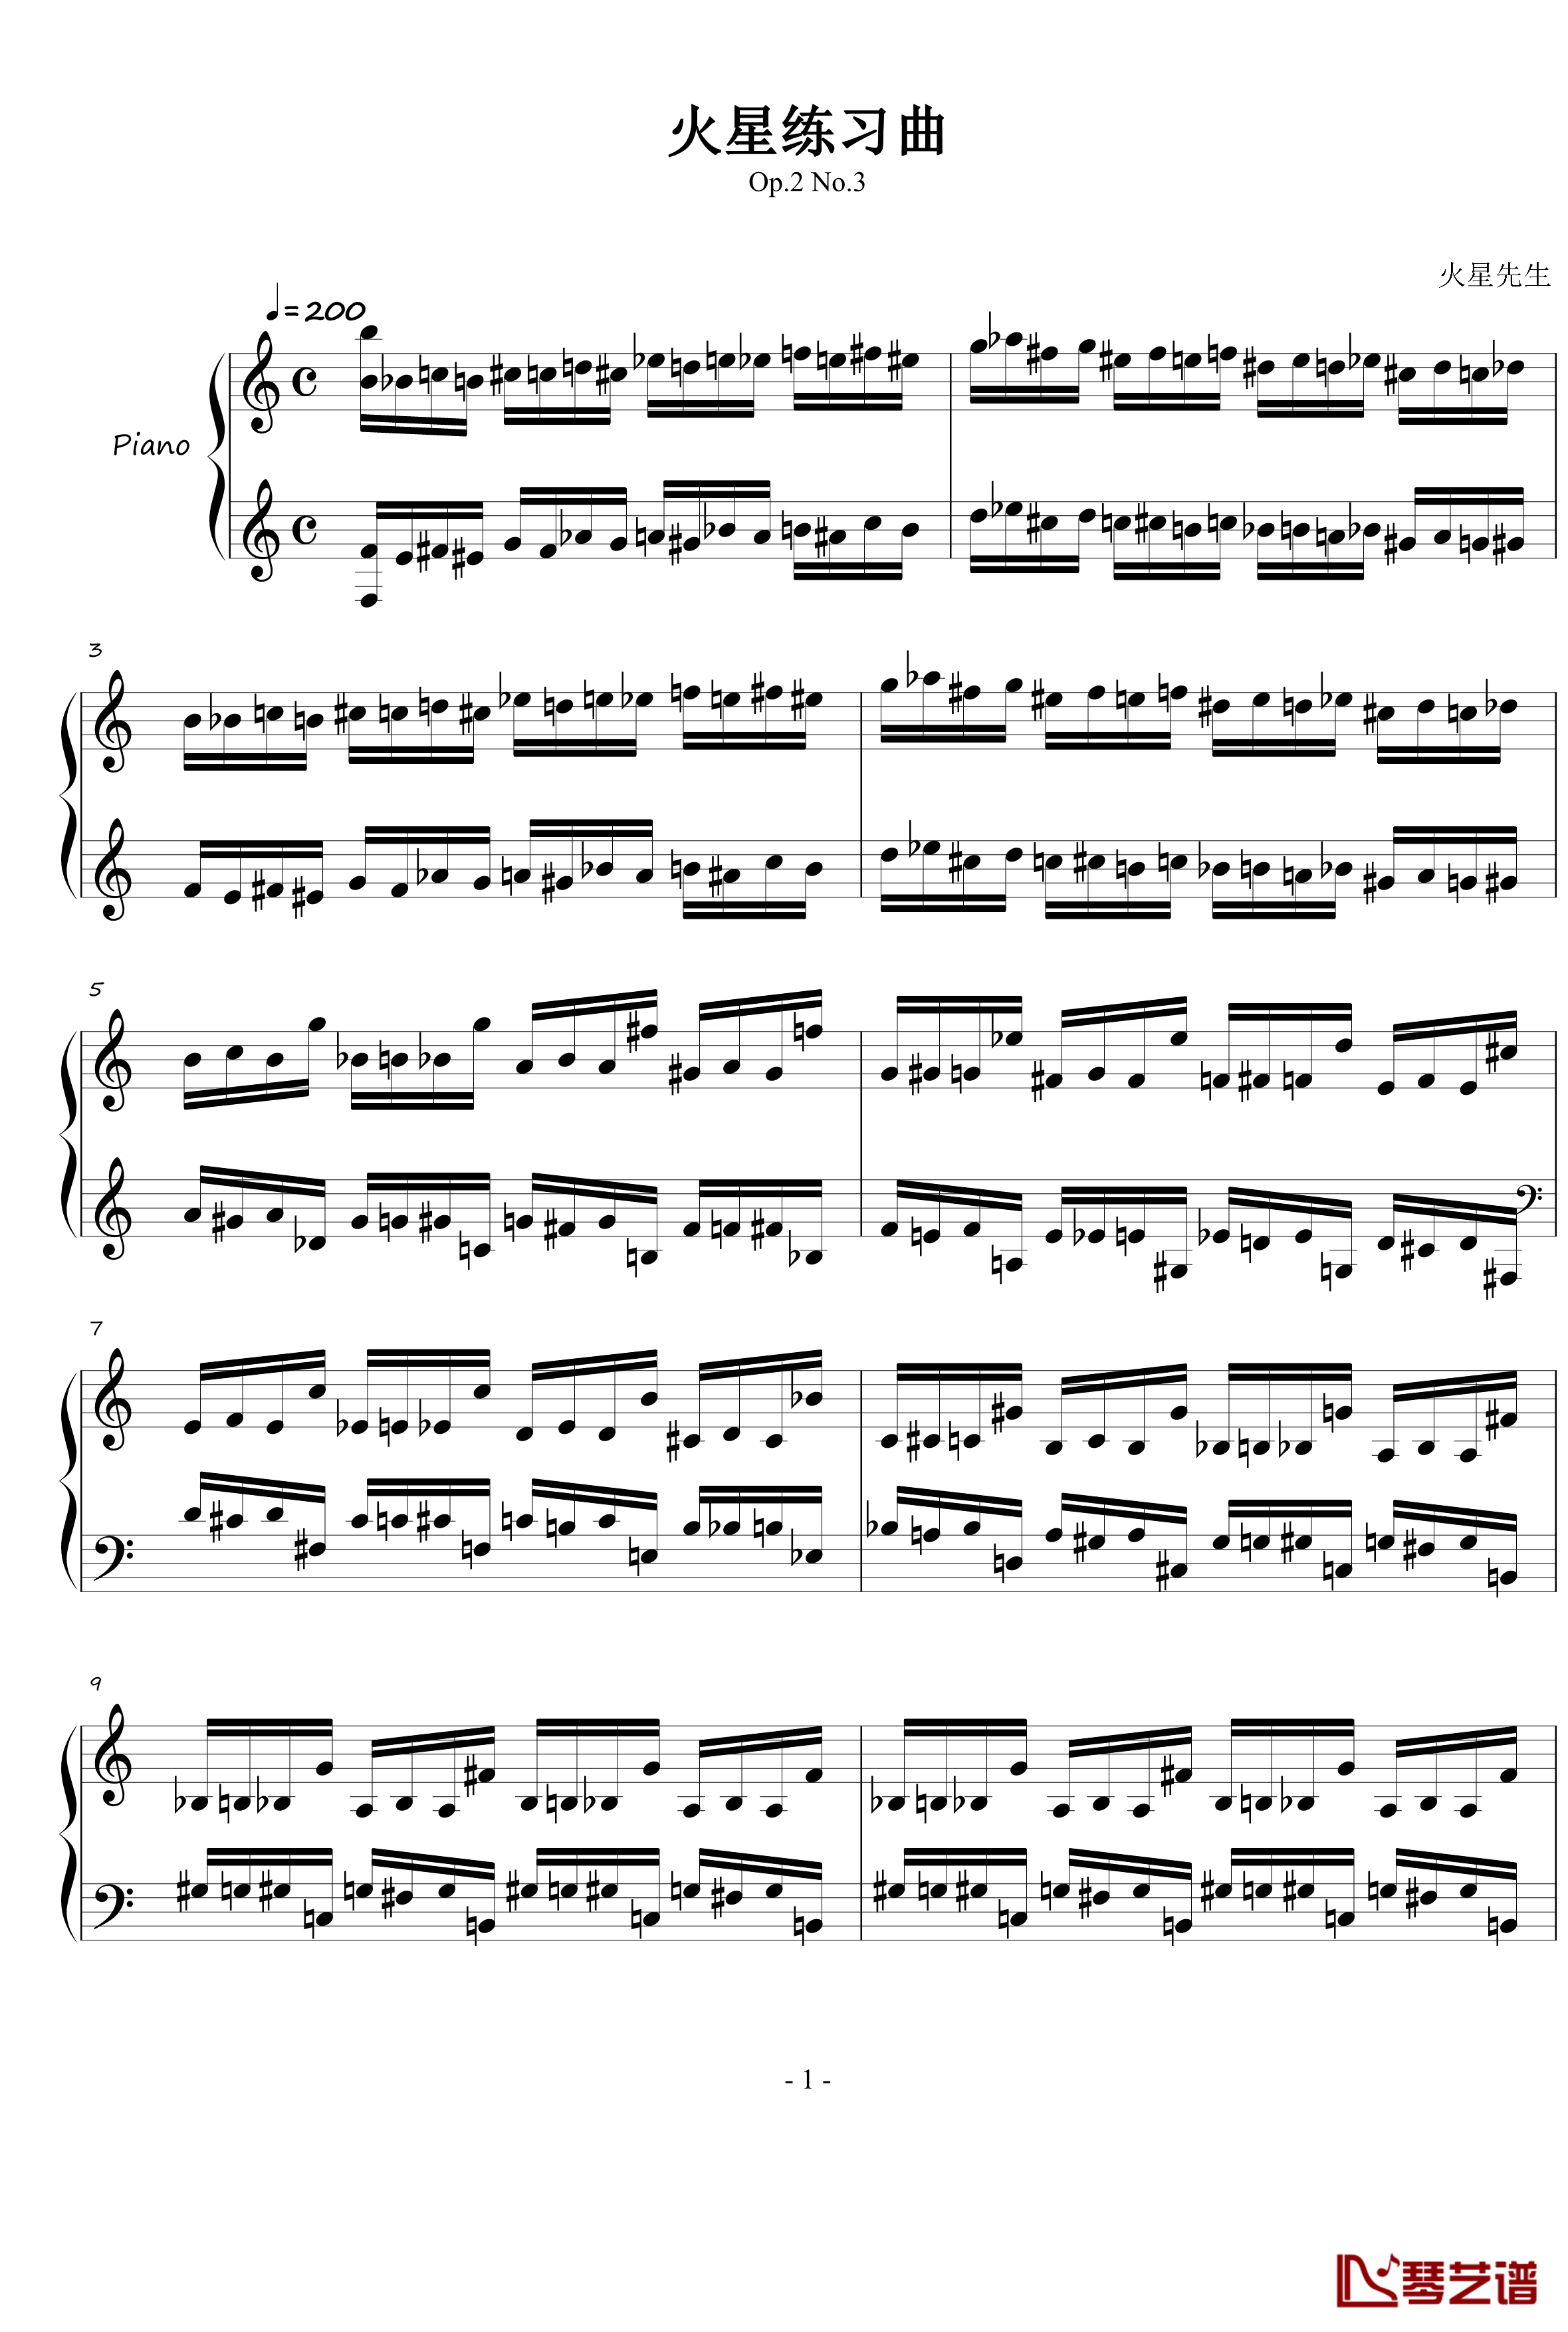 火星练习曲钢琴谱Op.2 No.3-火星先生1